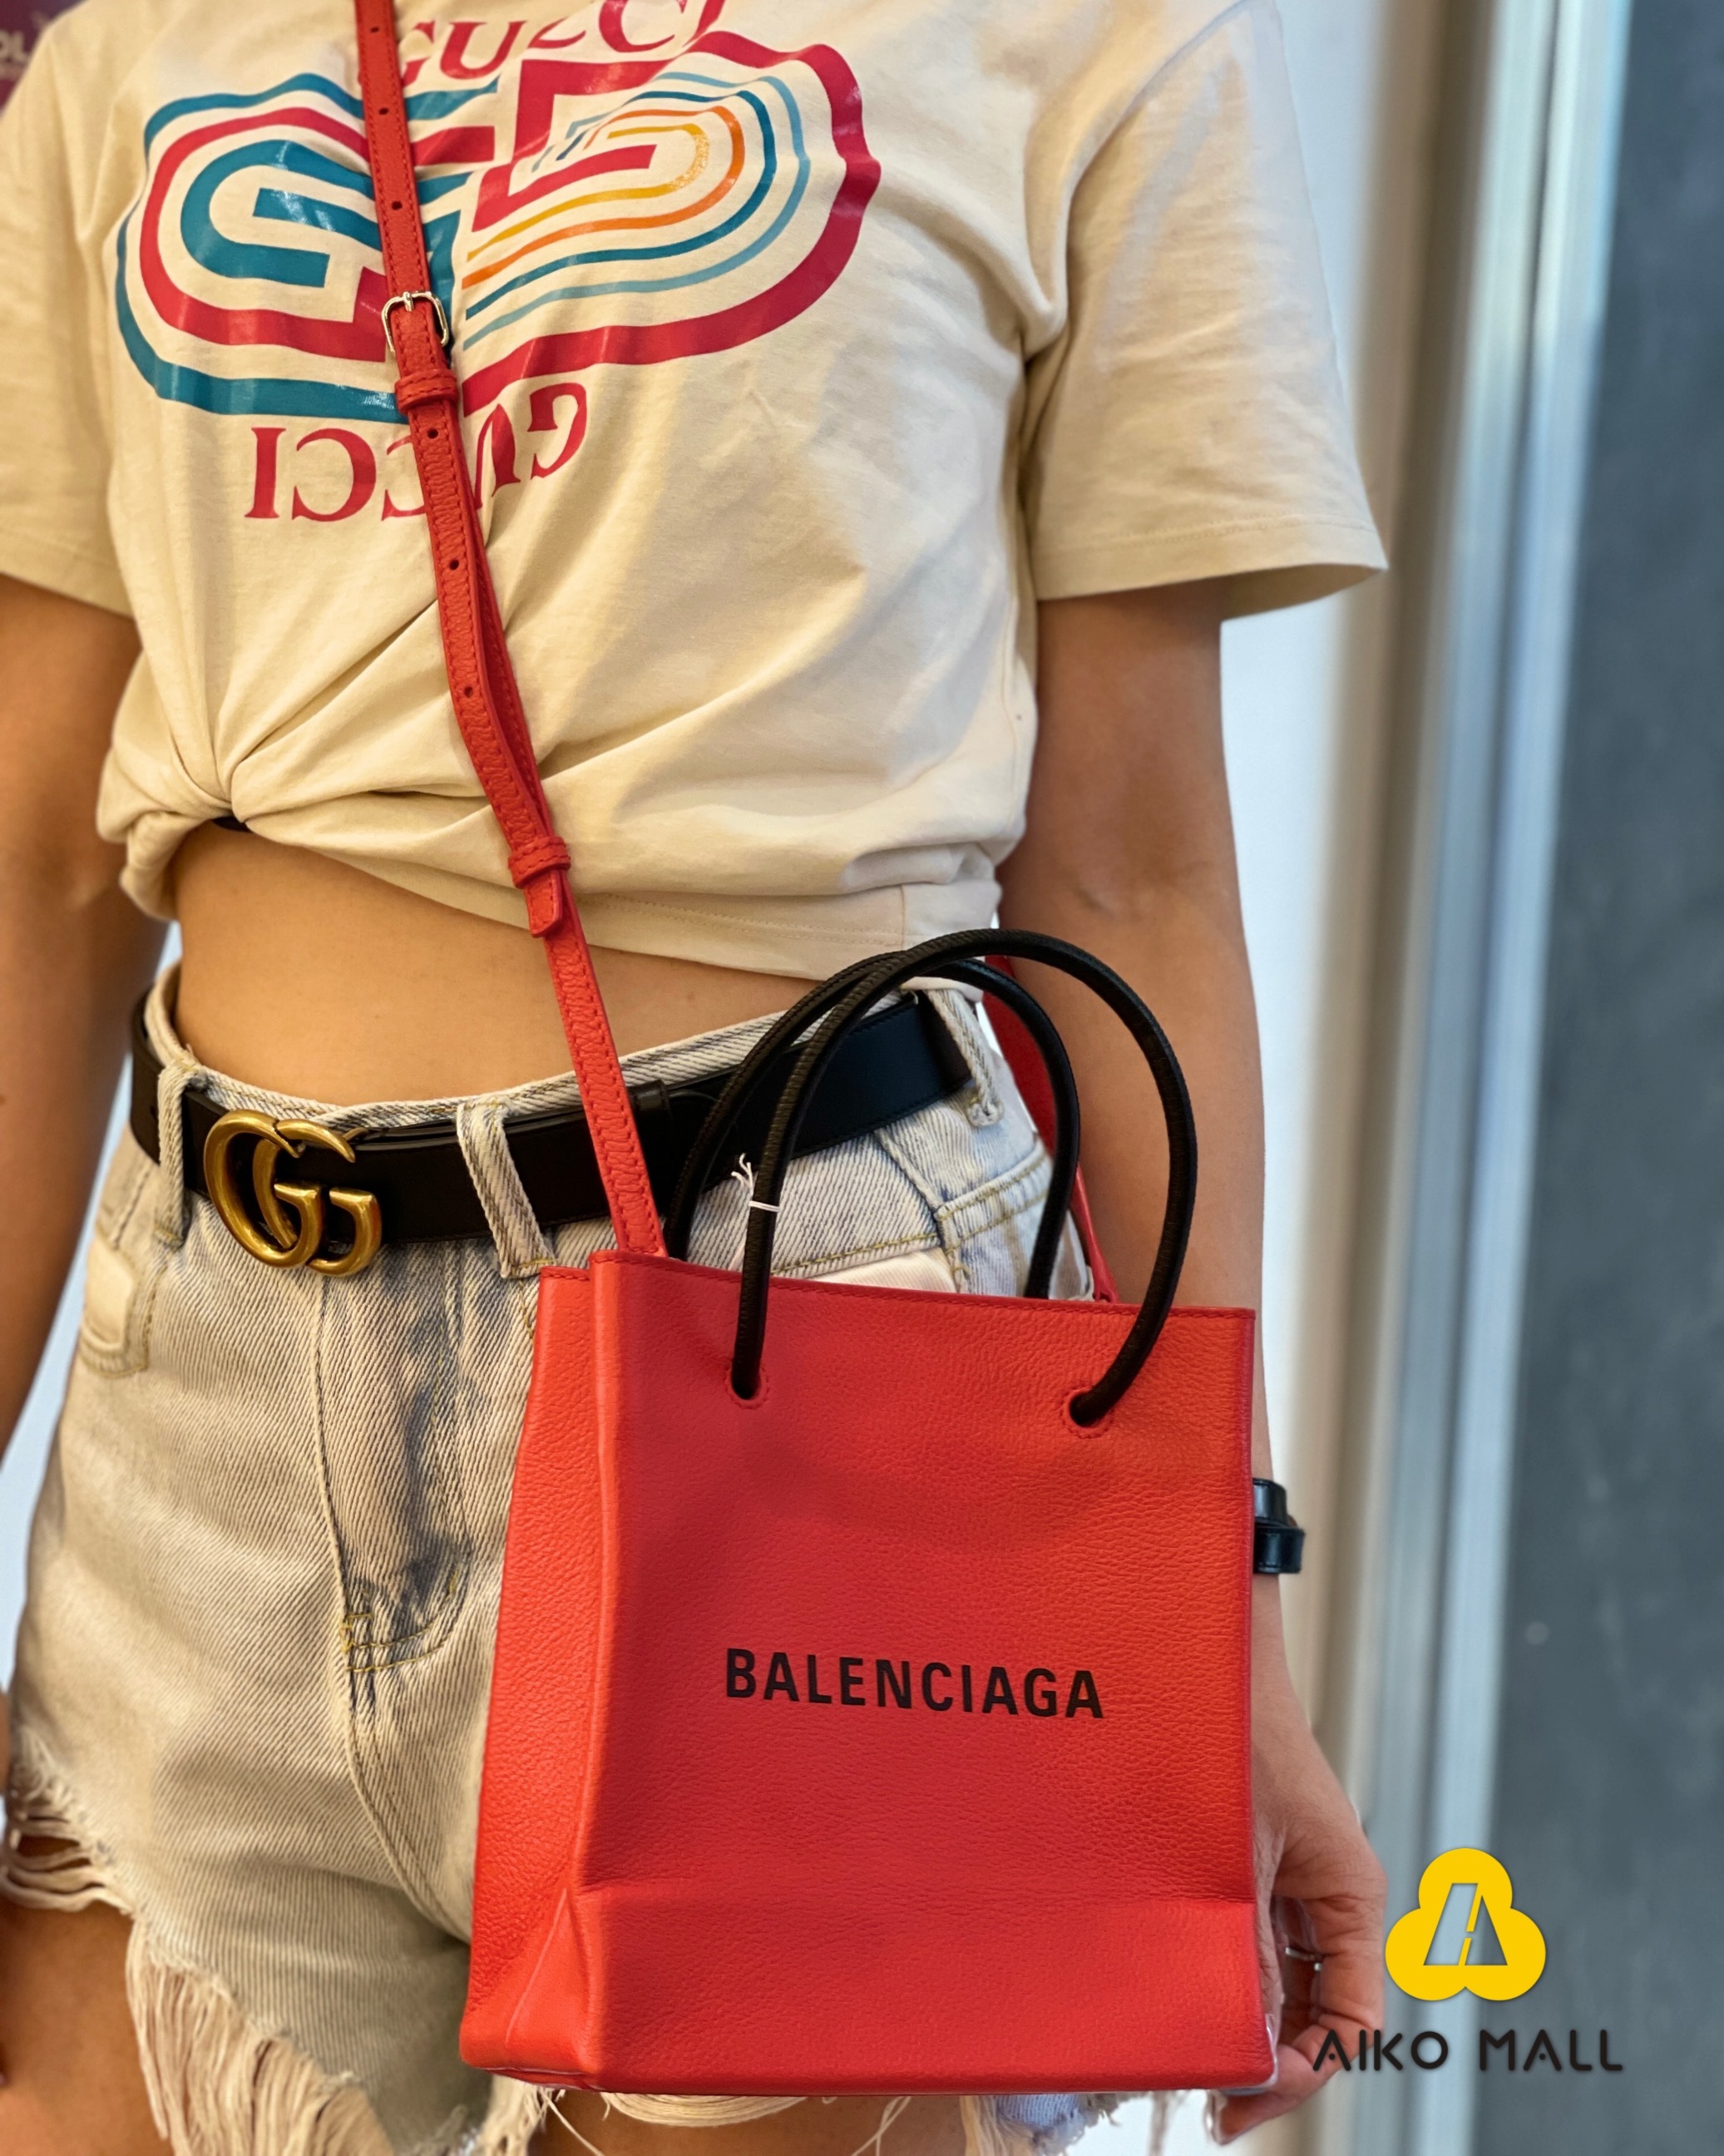 【訂金$500】PRELOVED 二手 Balenciaga shopping 手袋 紅色 (90% New)